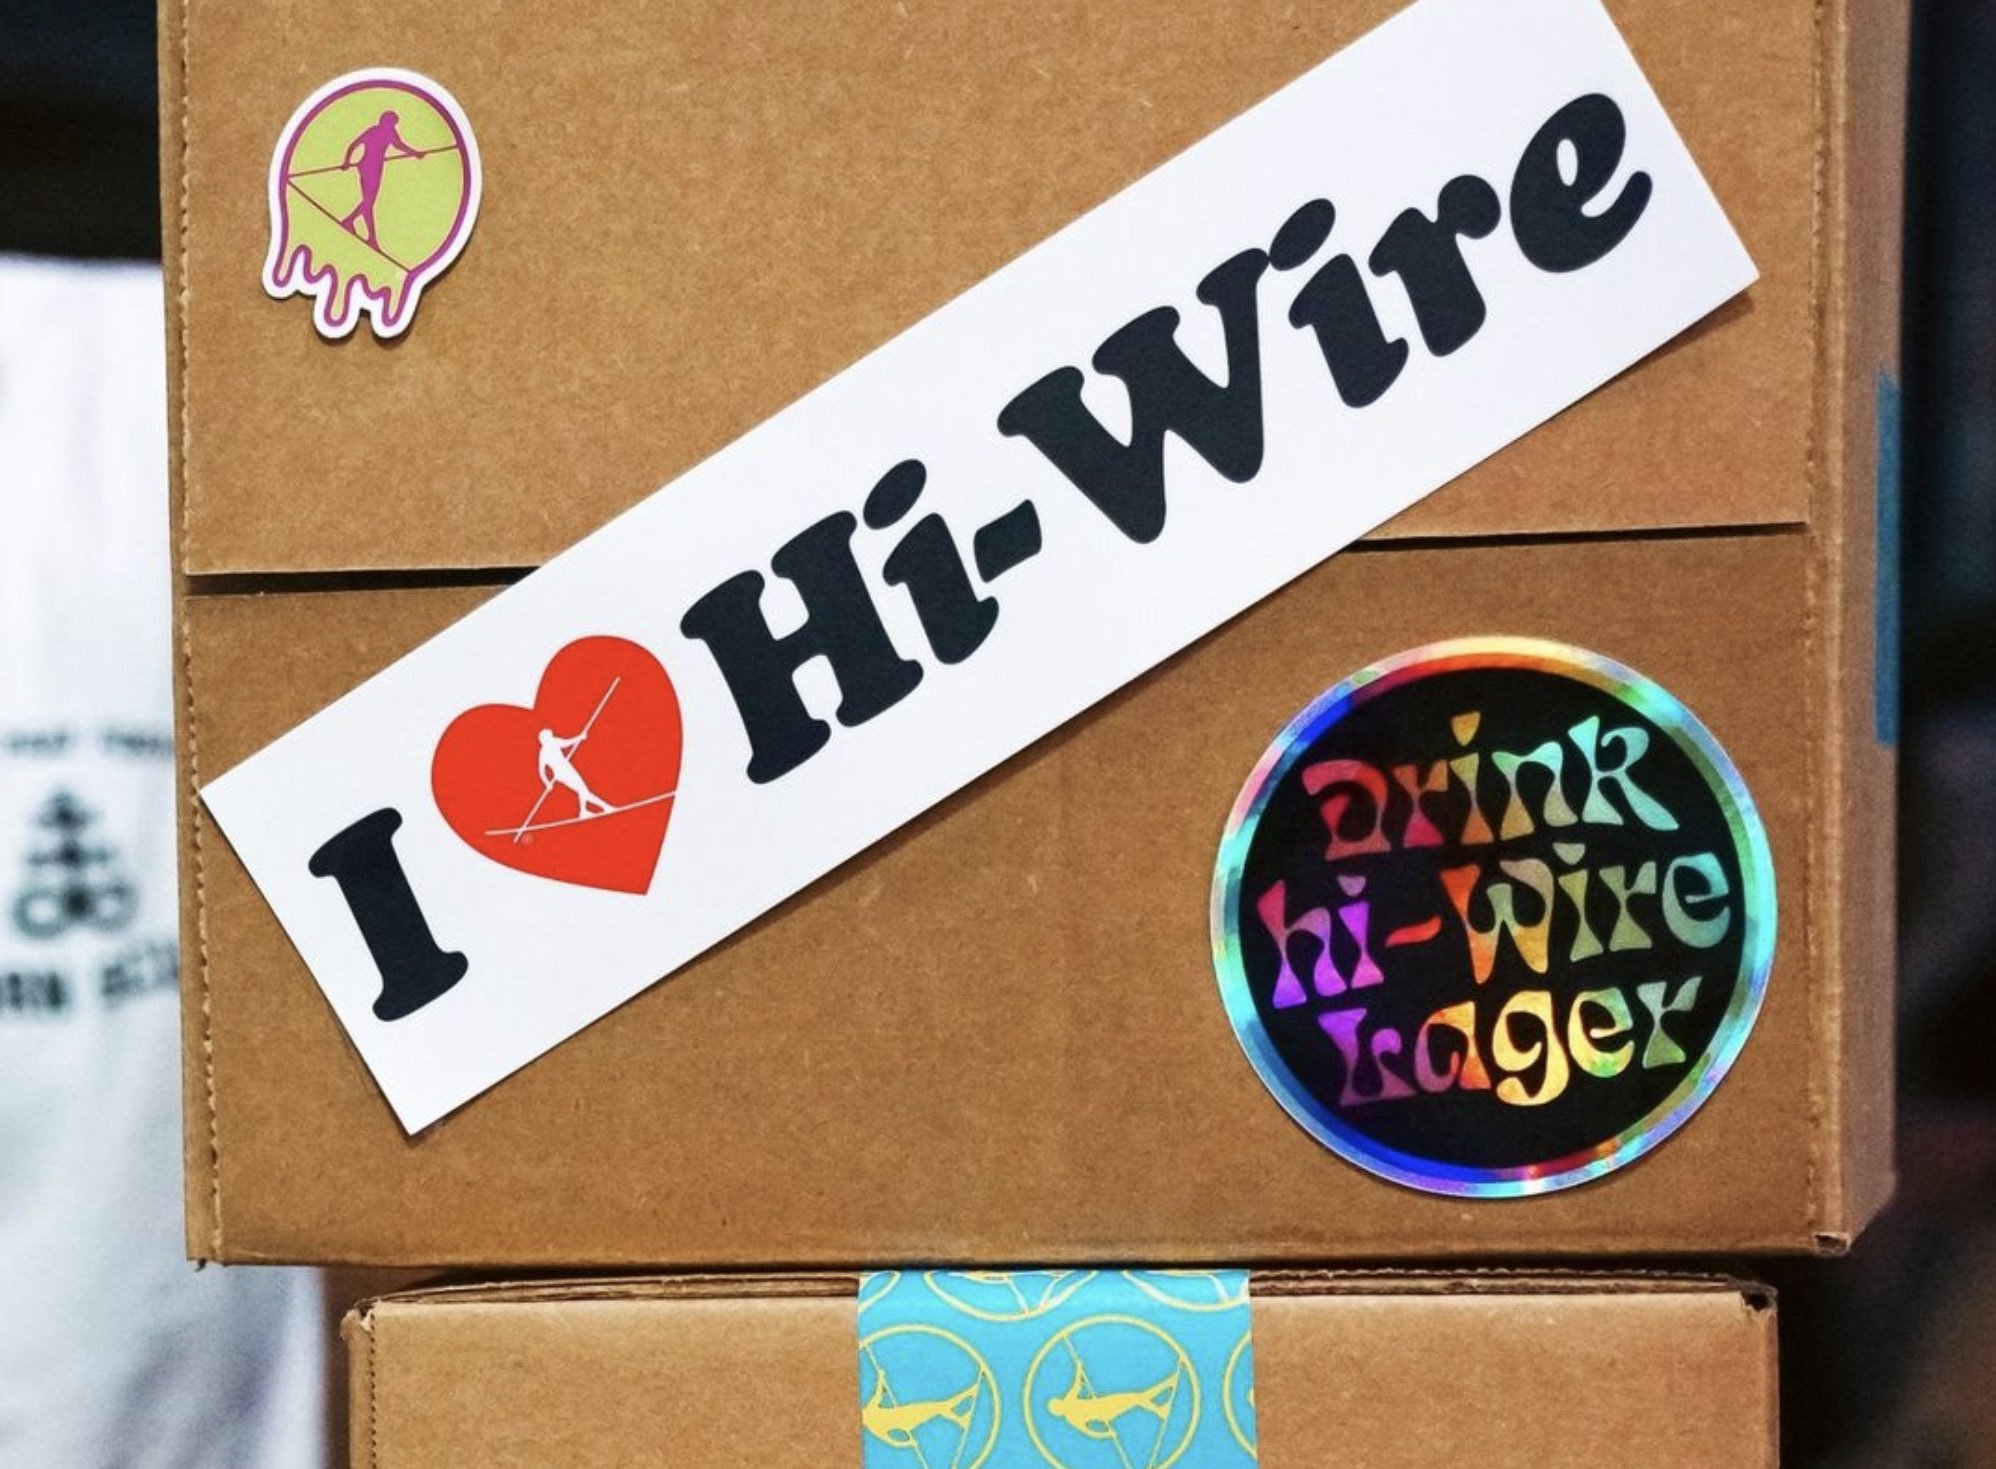 hiwire-beer.jpg